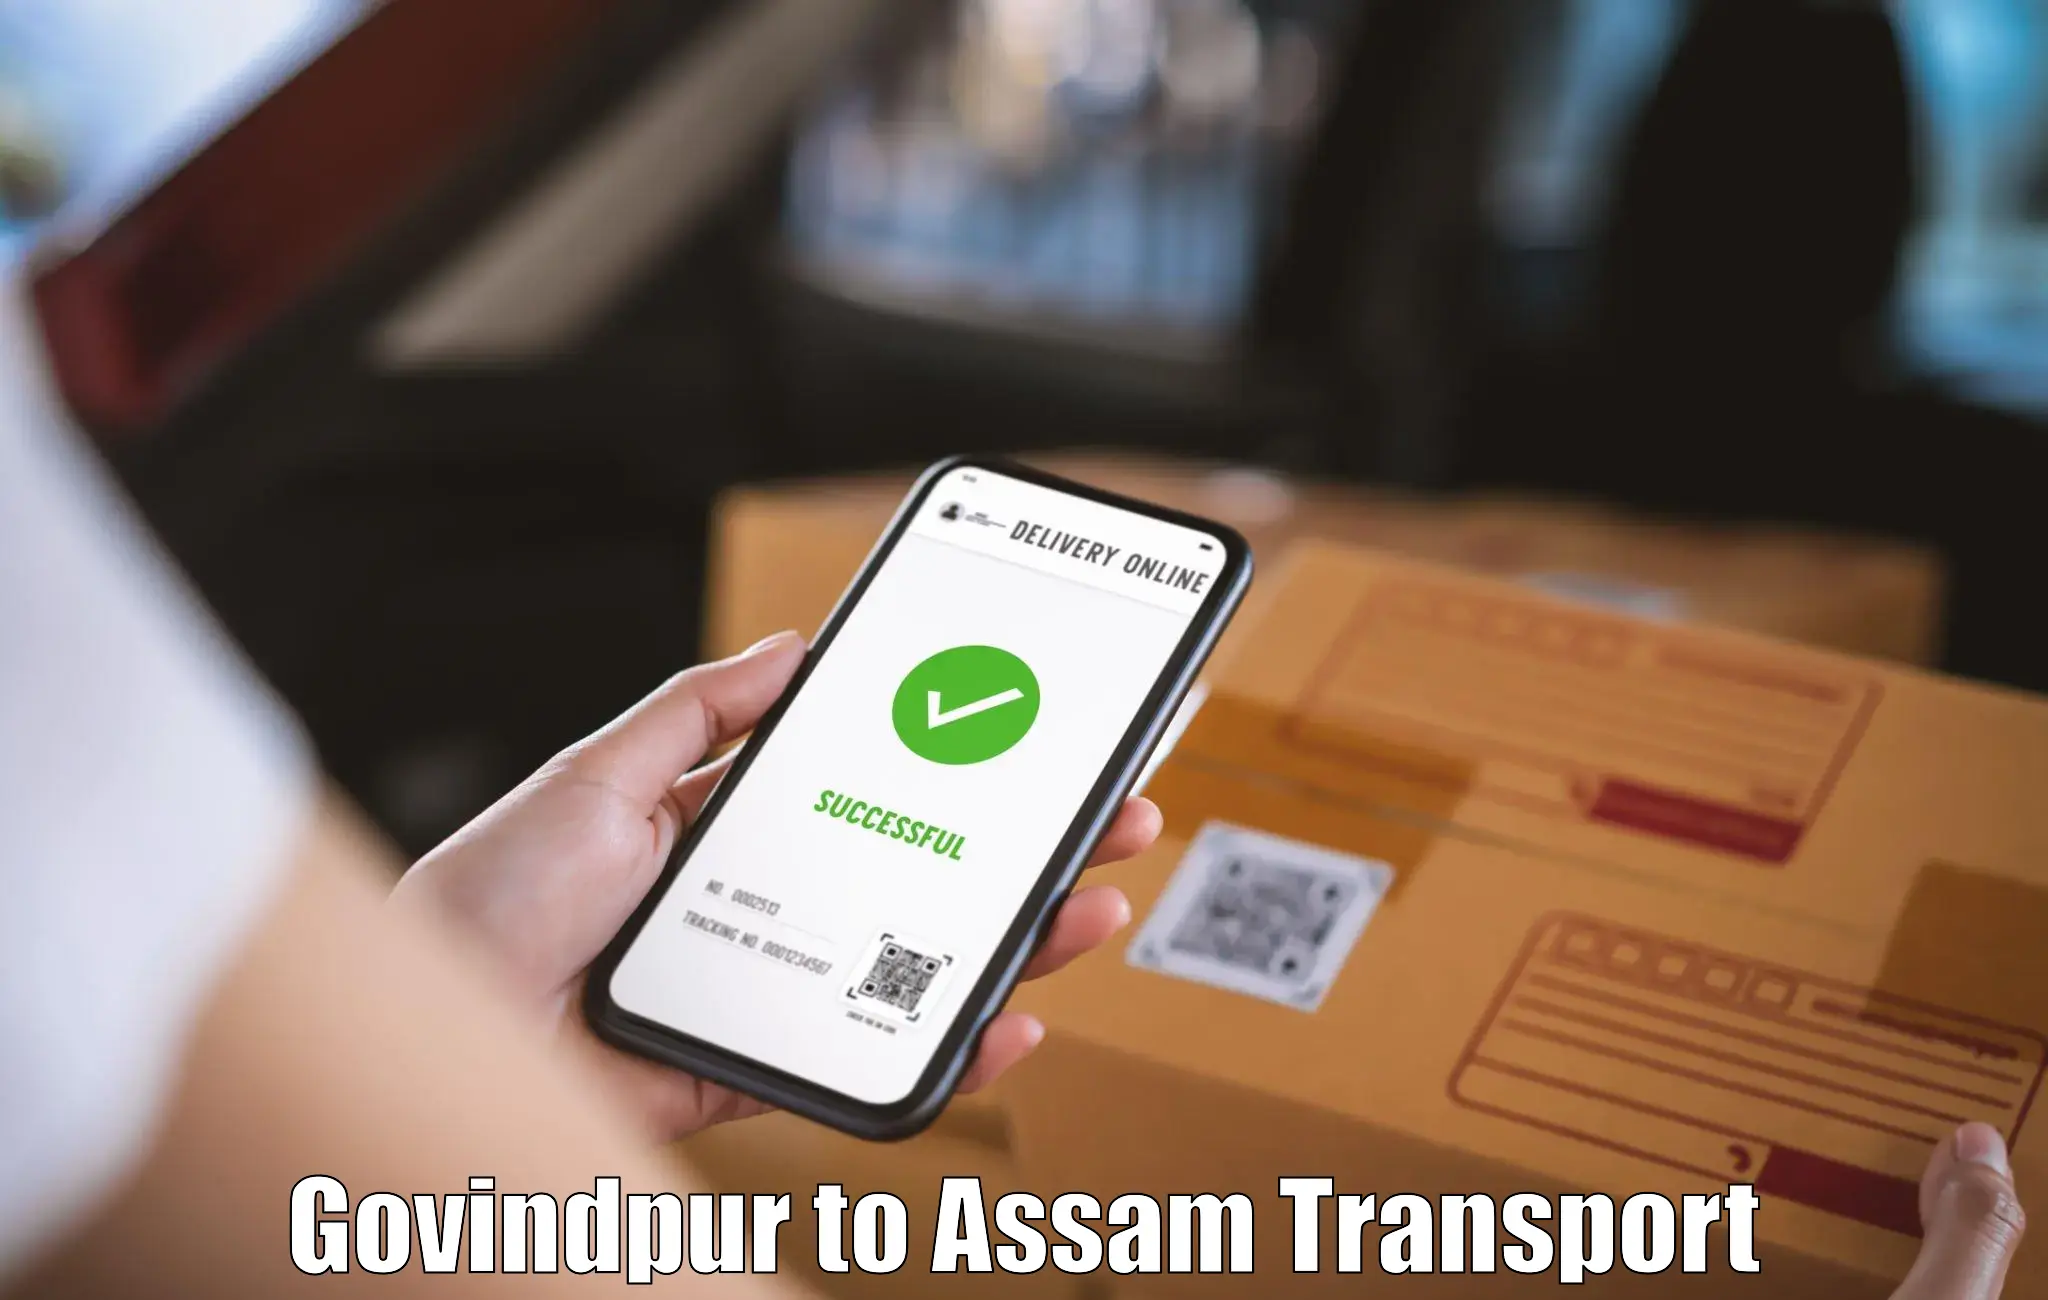 Transport shared services Govindpur to Tinsukia